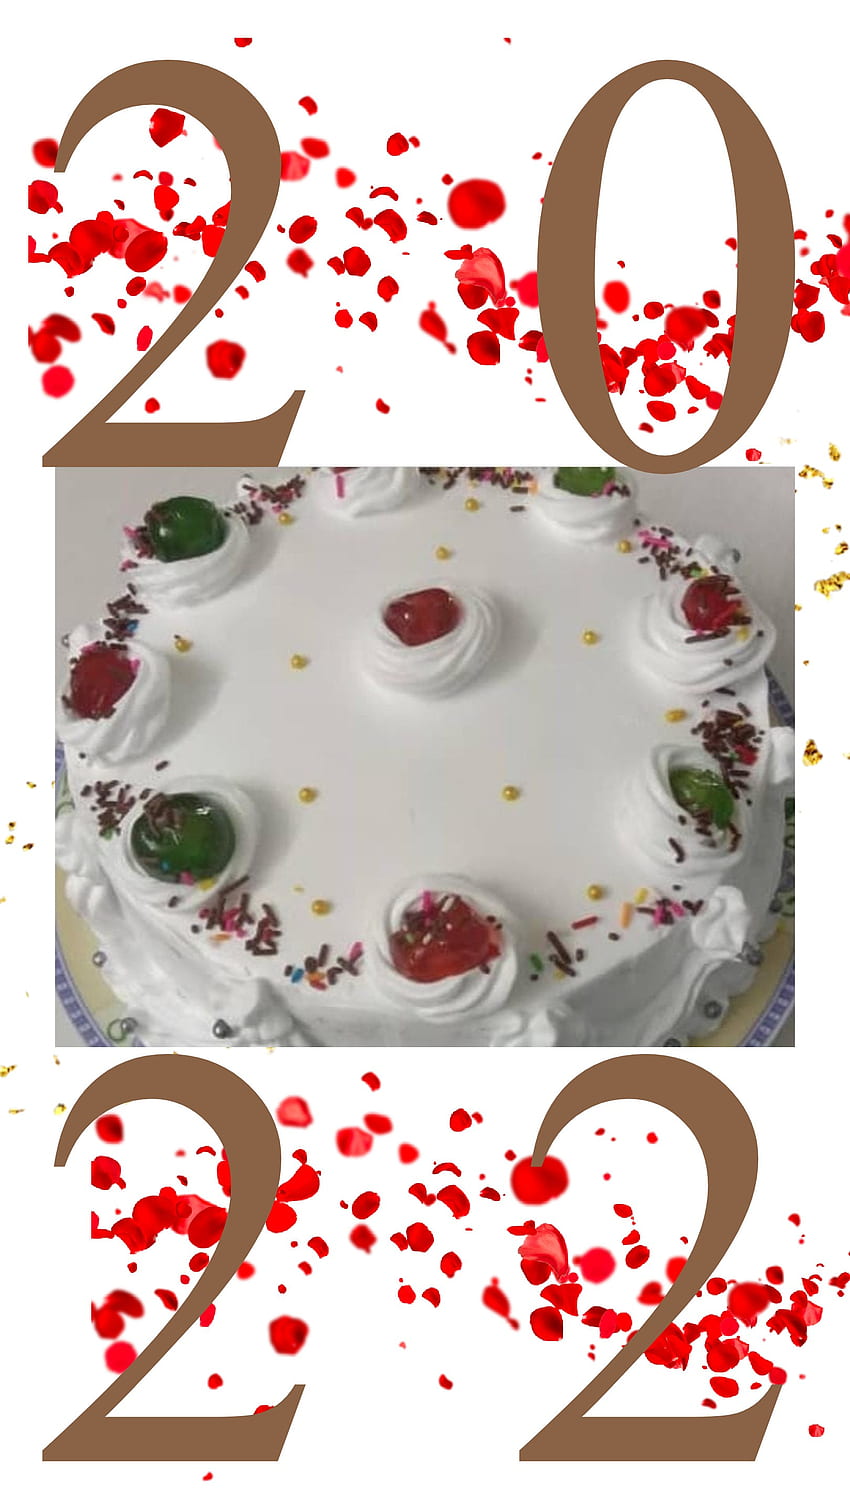 New year cake stock image. Image of cake, delicious, custard - 40388701